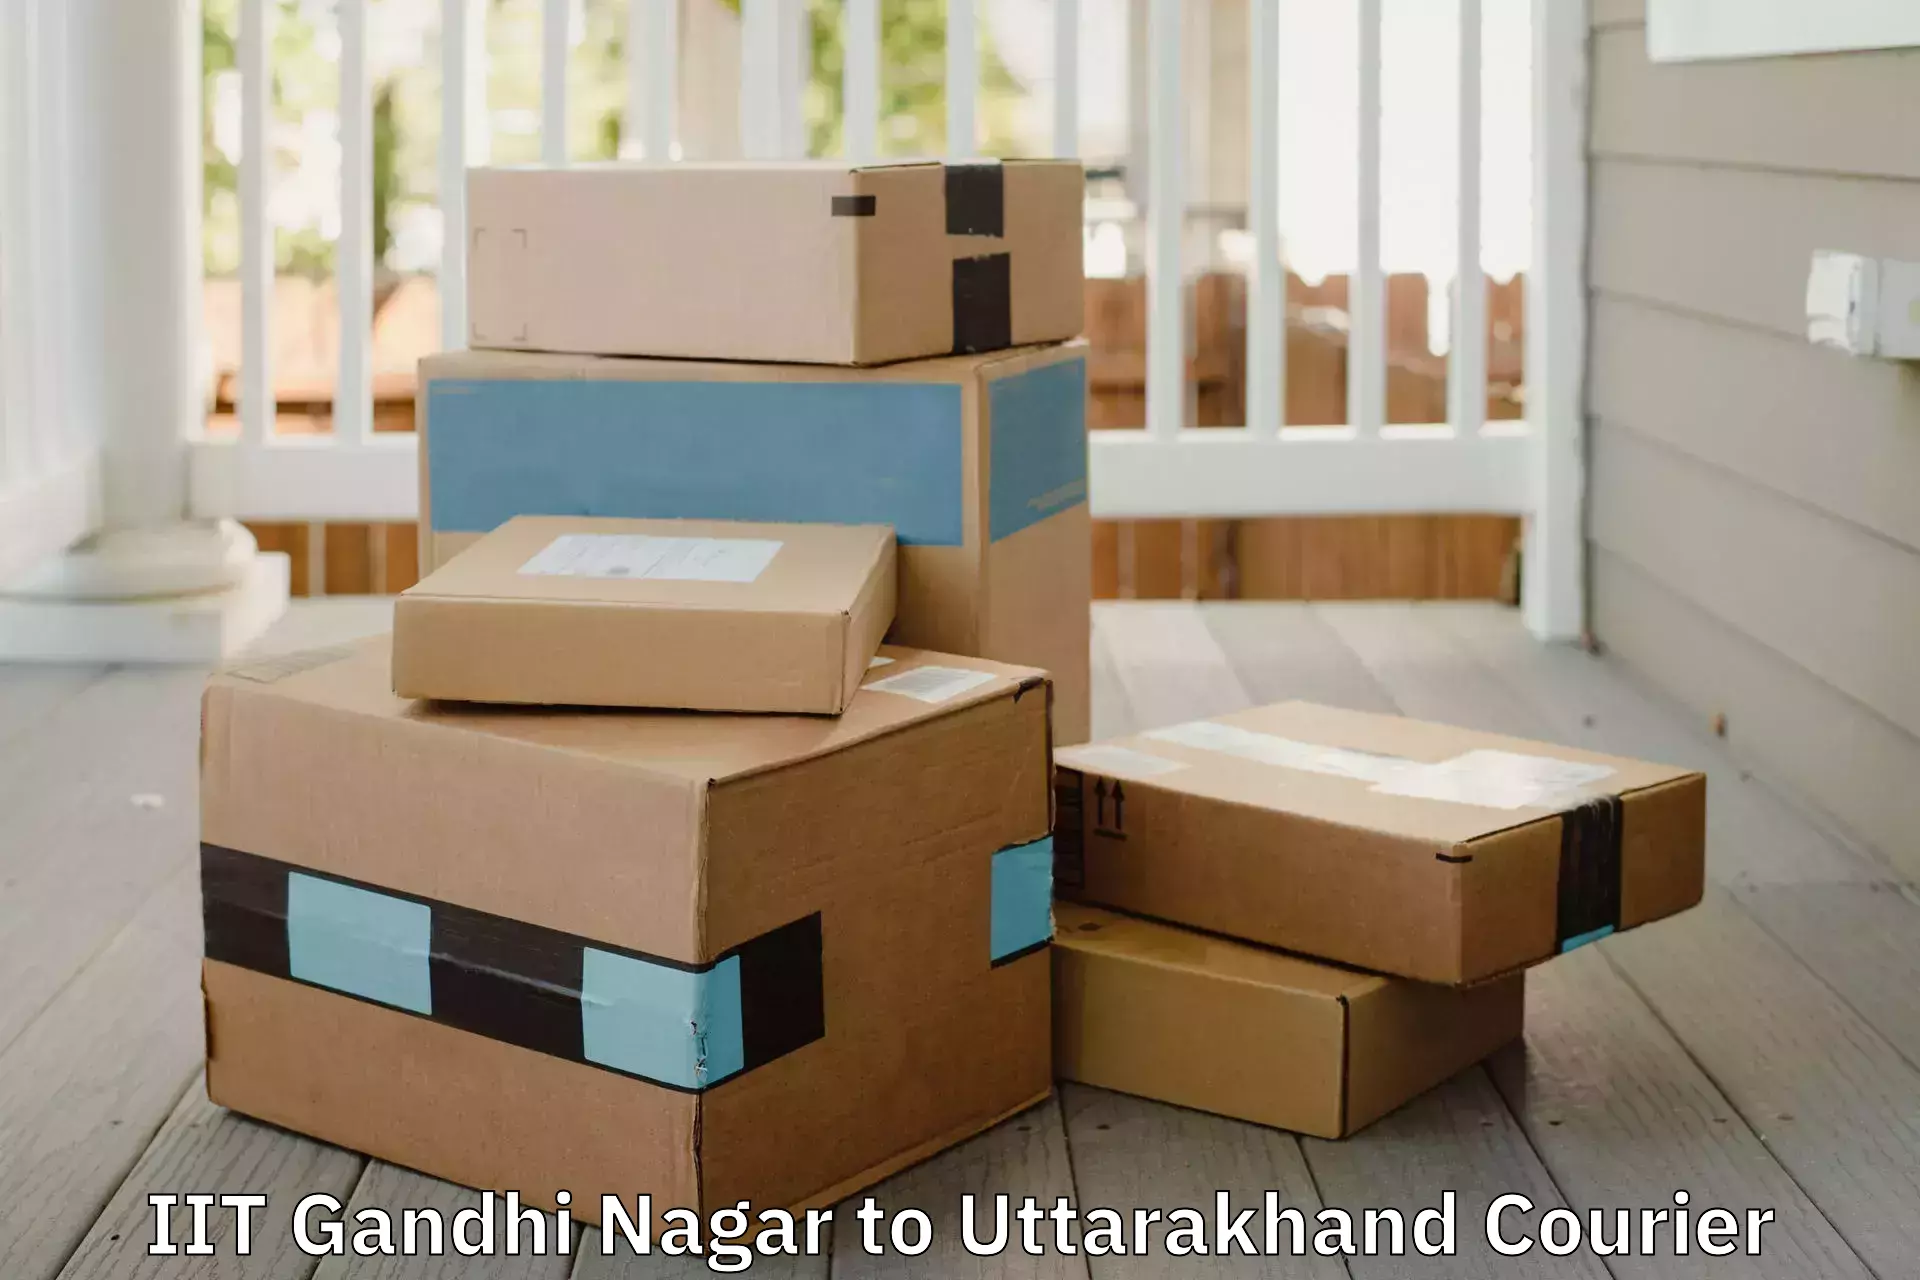 Online household goods transport IIT Gandhi Nagar to Uttarakhand